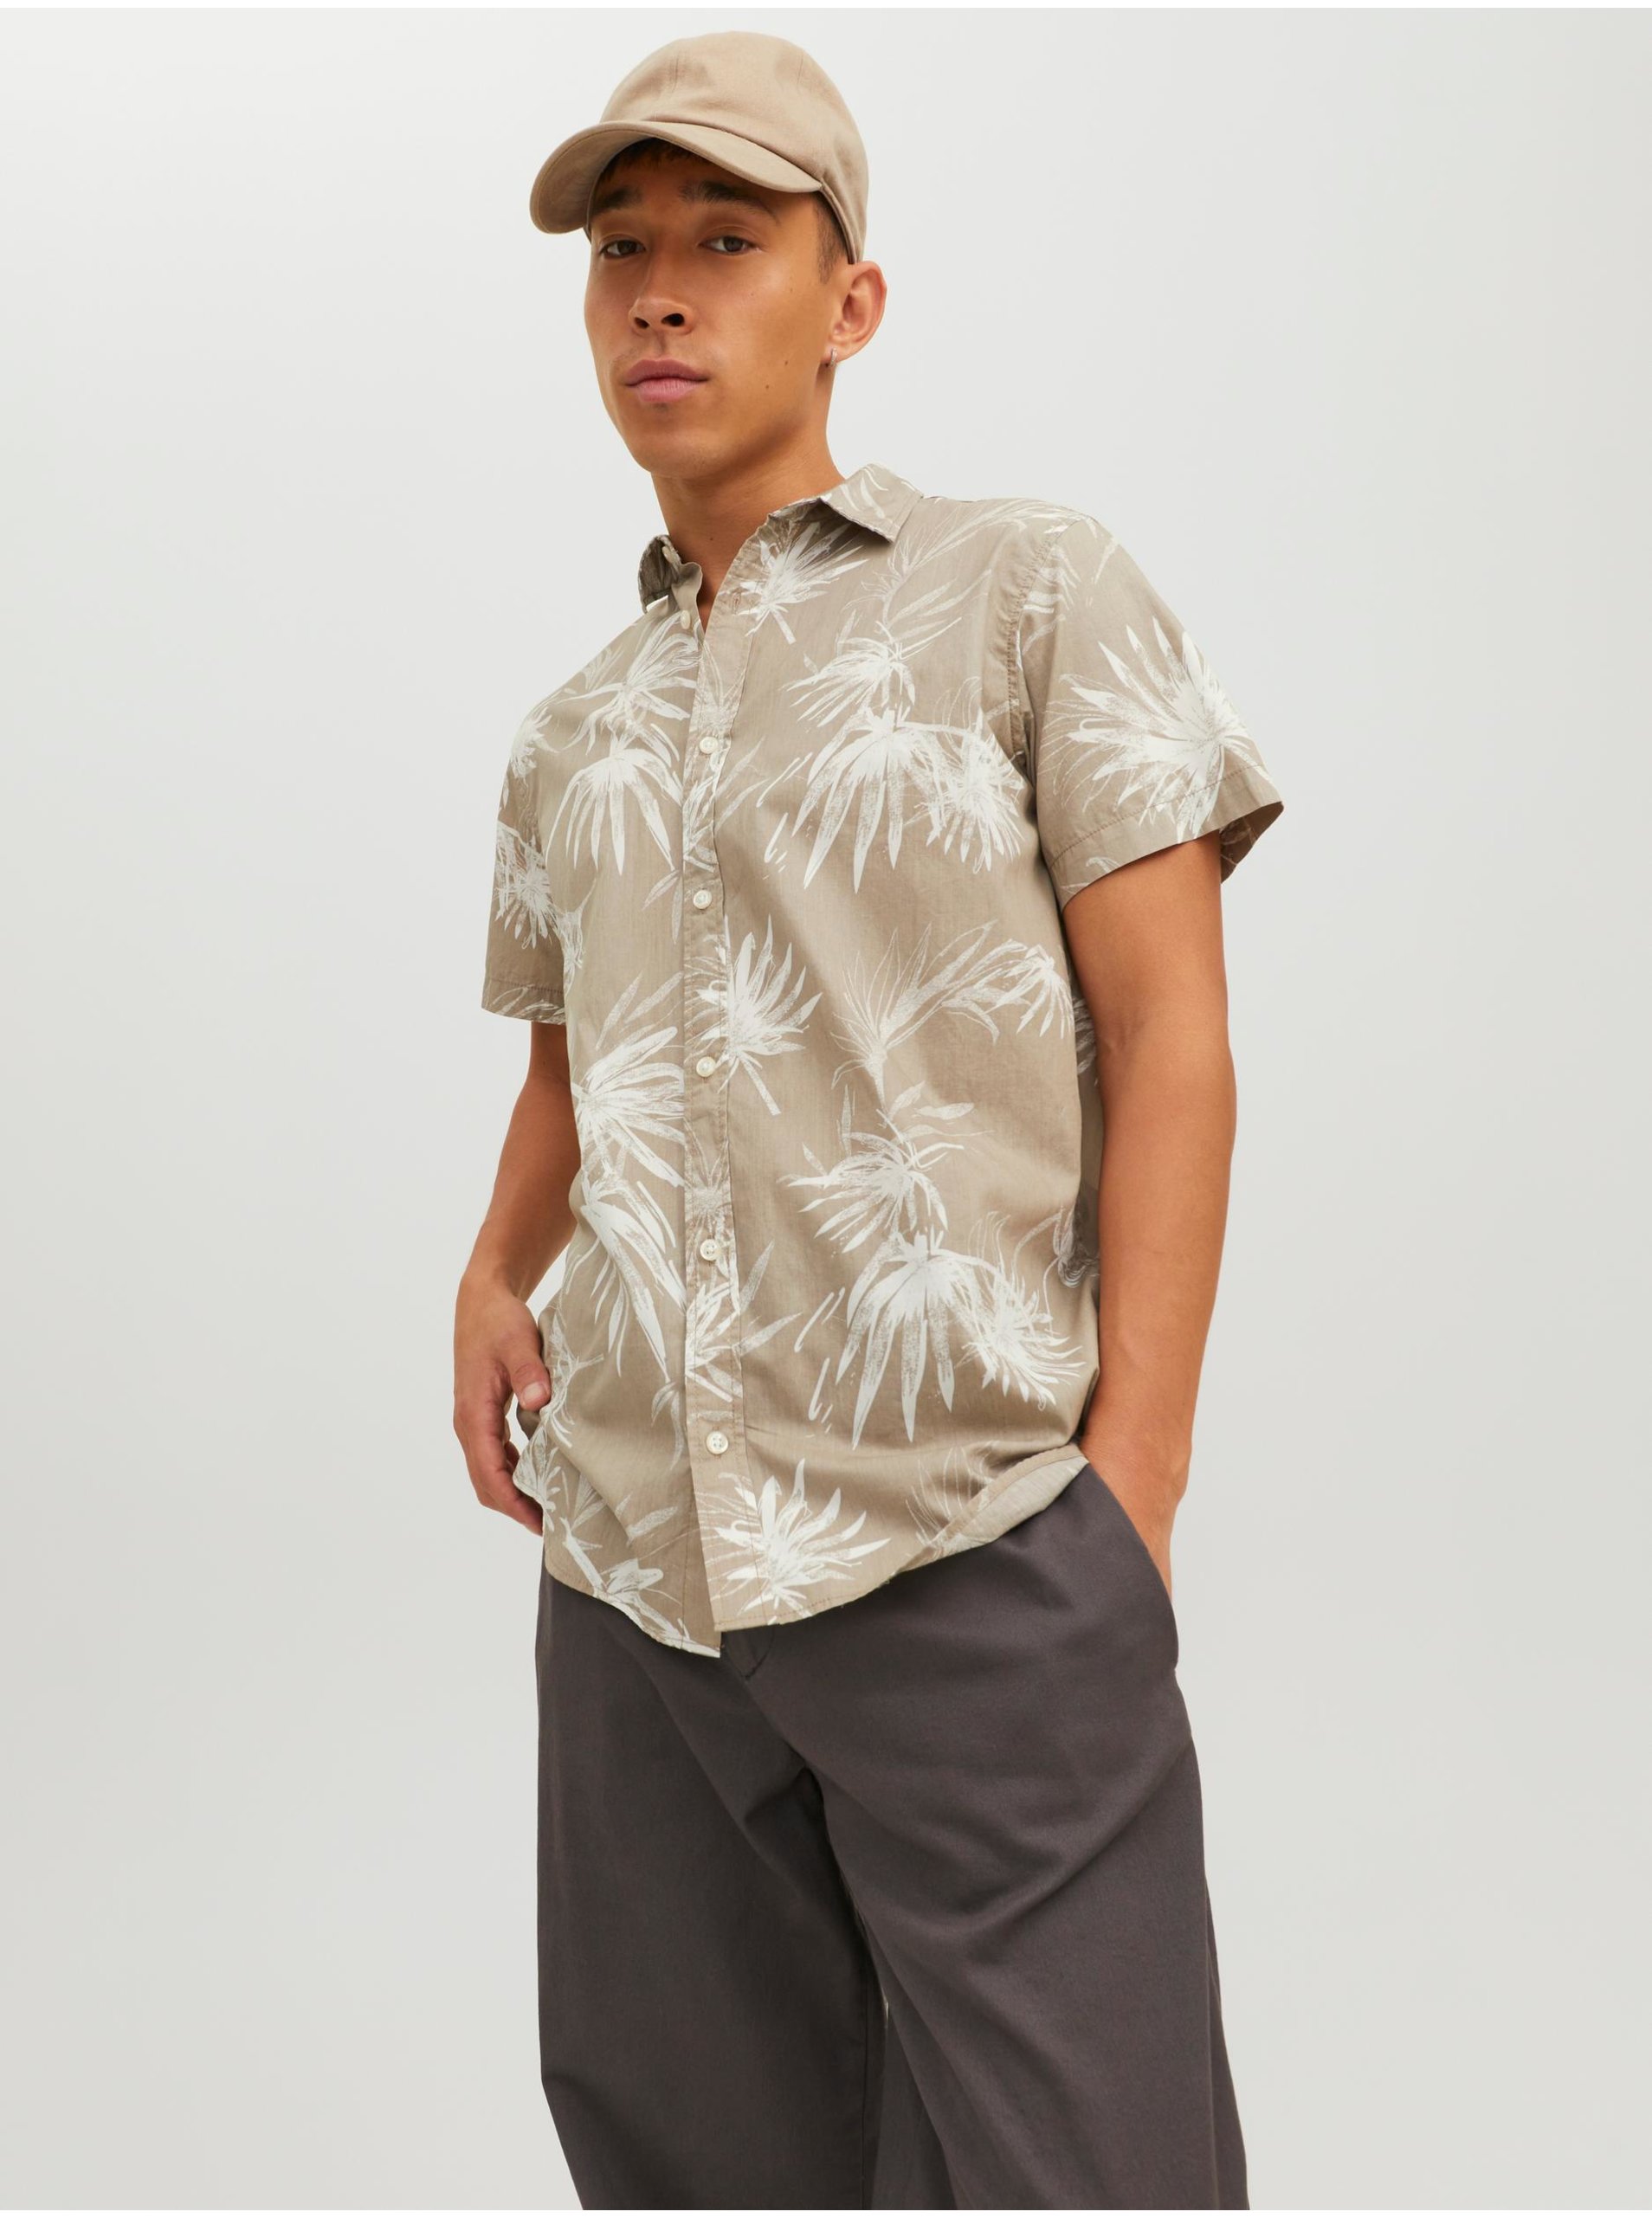 Lacno Béžová pánska vzorovaná košeľa s krátkym rukávom Jack & Jones Crayon